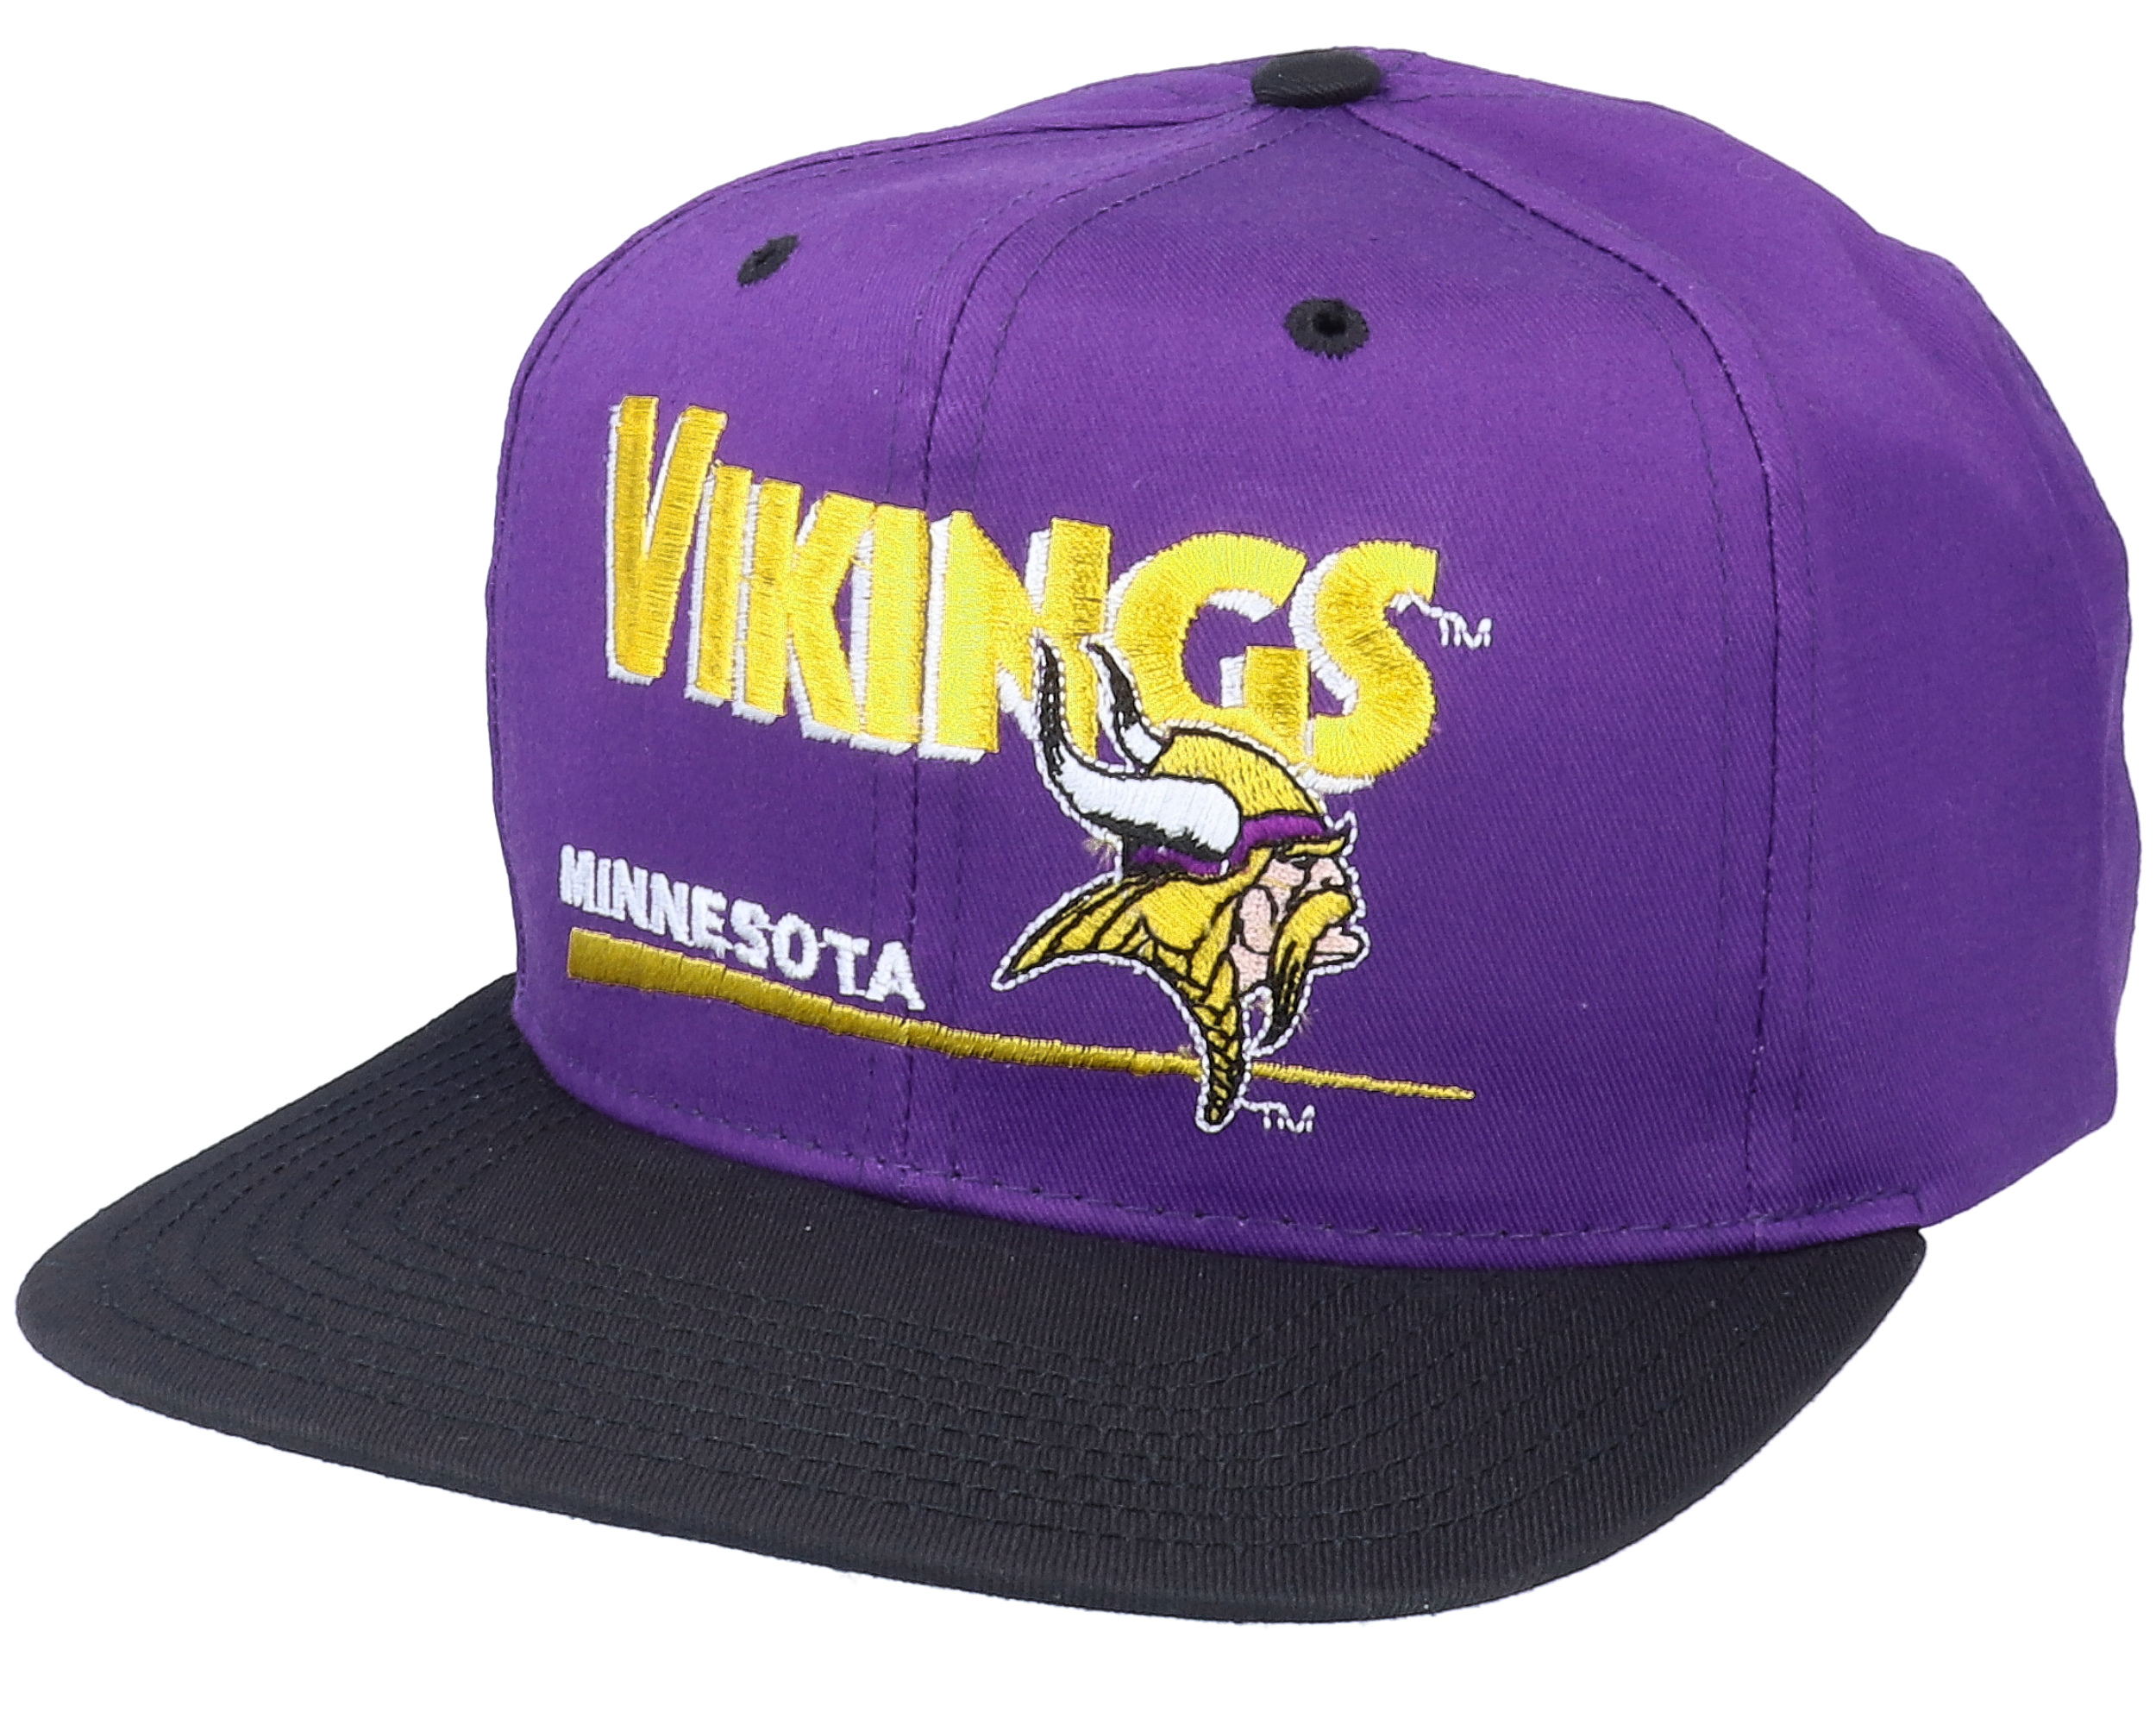 Minnesota Vikings Classic NFL Vintage Purple/Black Snapback